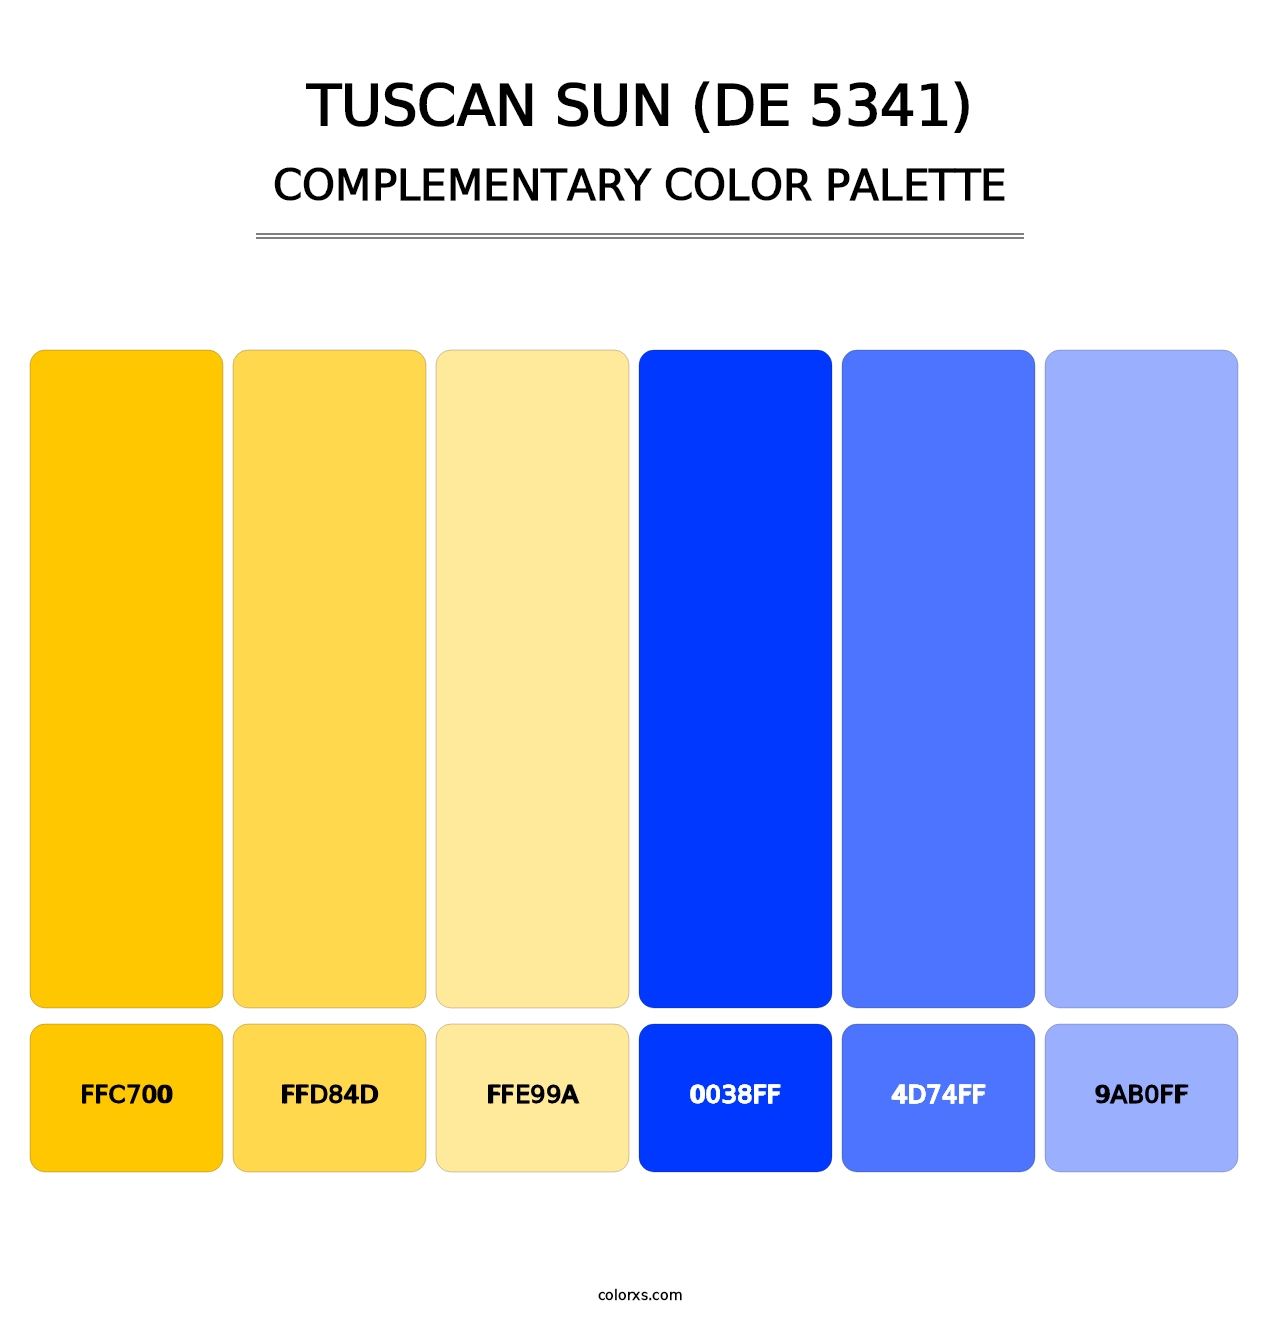 Tuscan Sun (DE 5341) - Complementary Color Palette